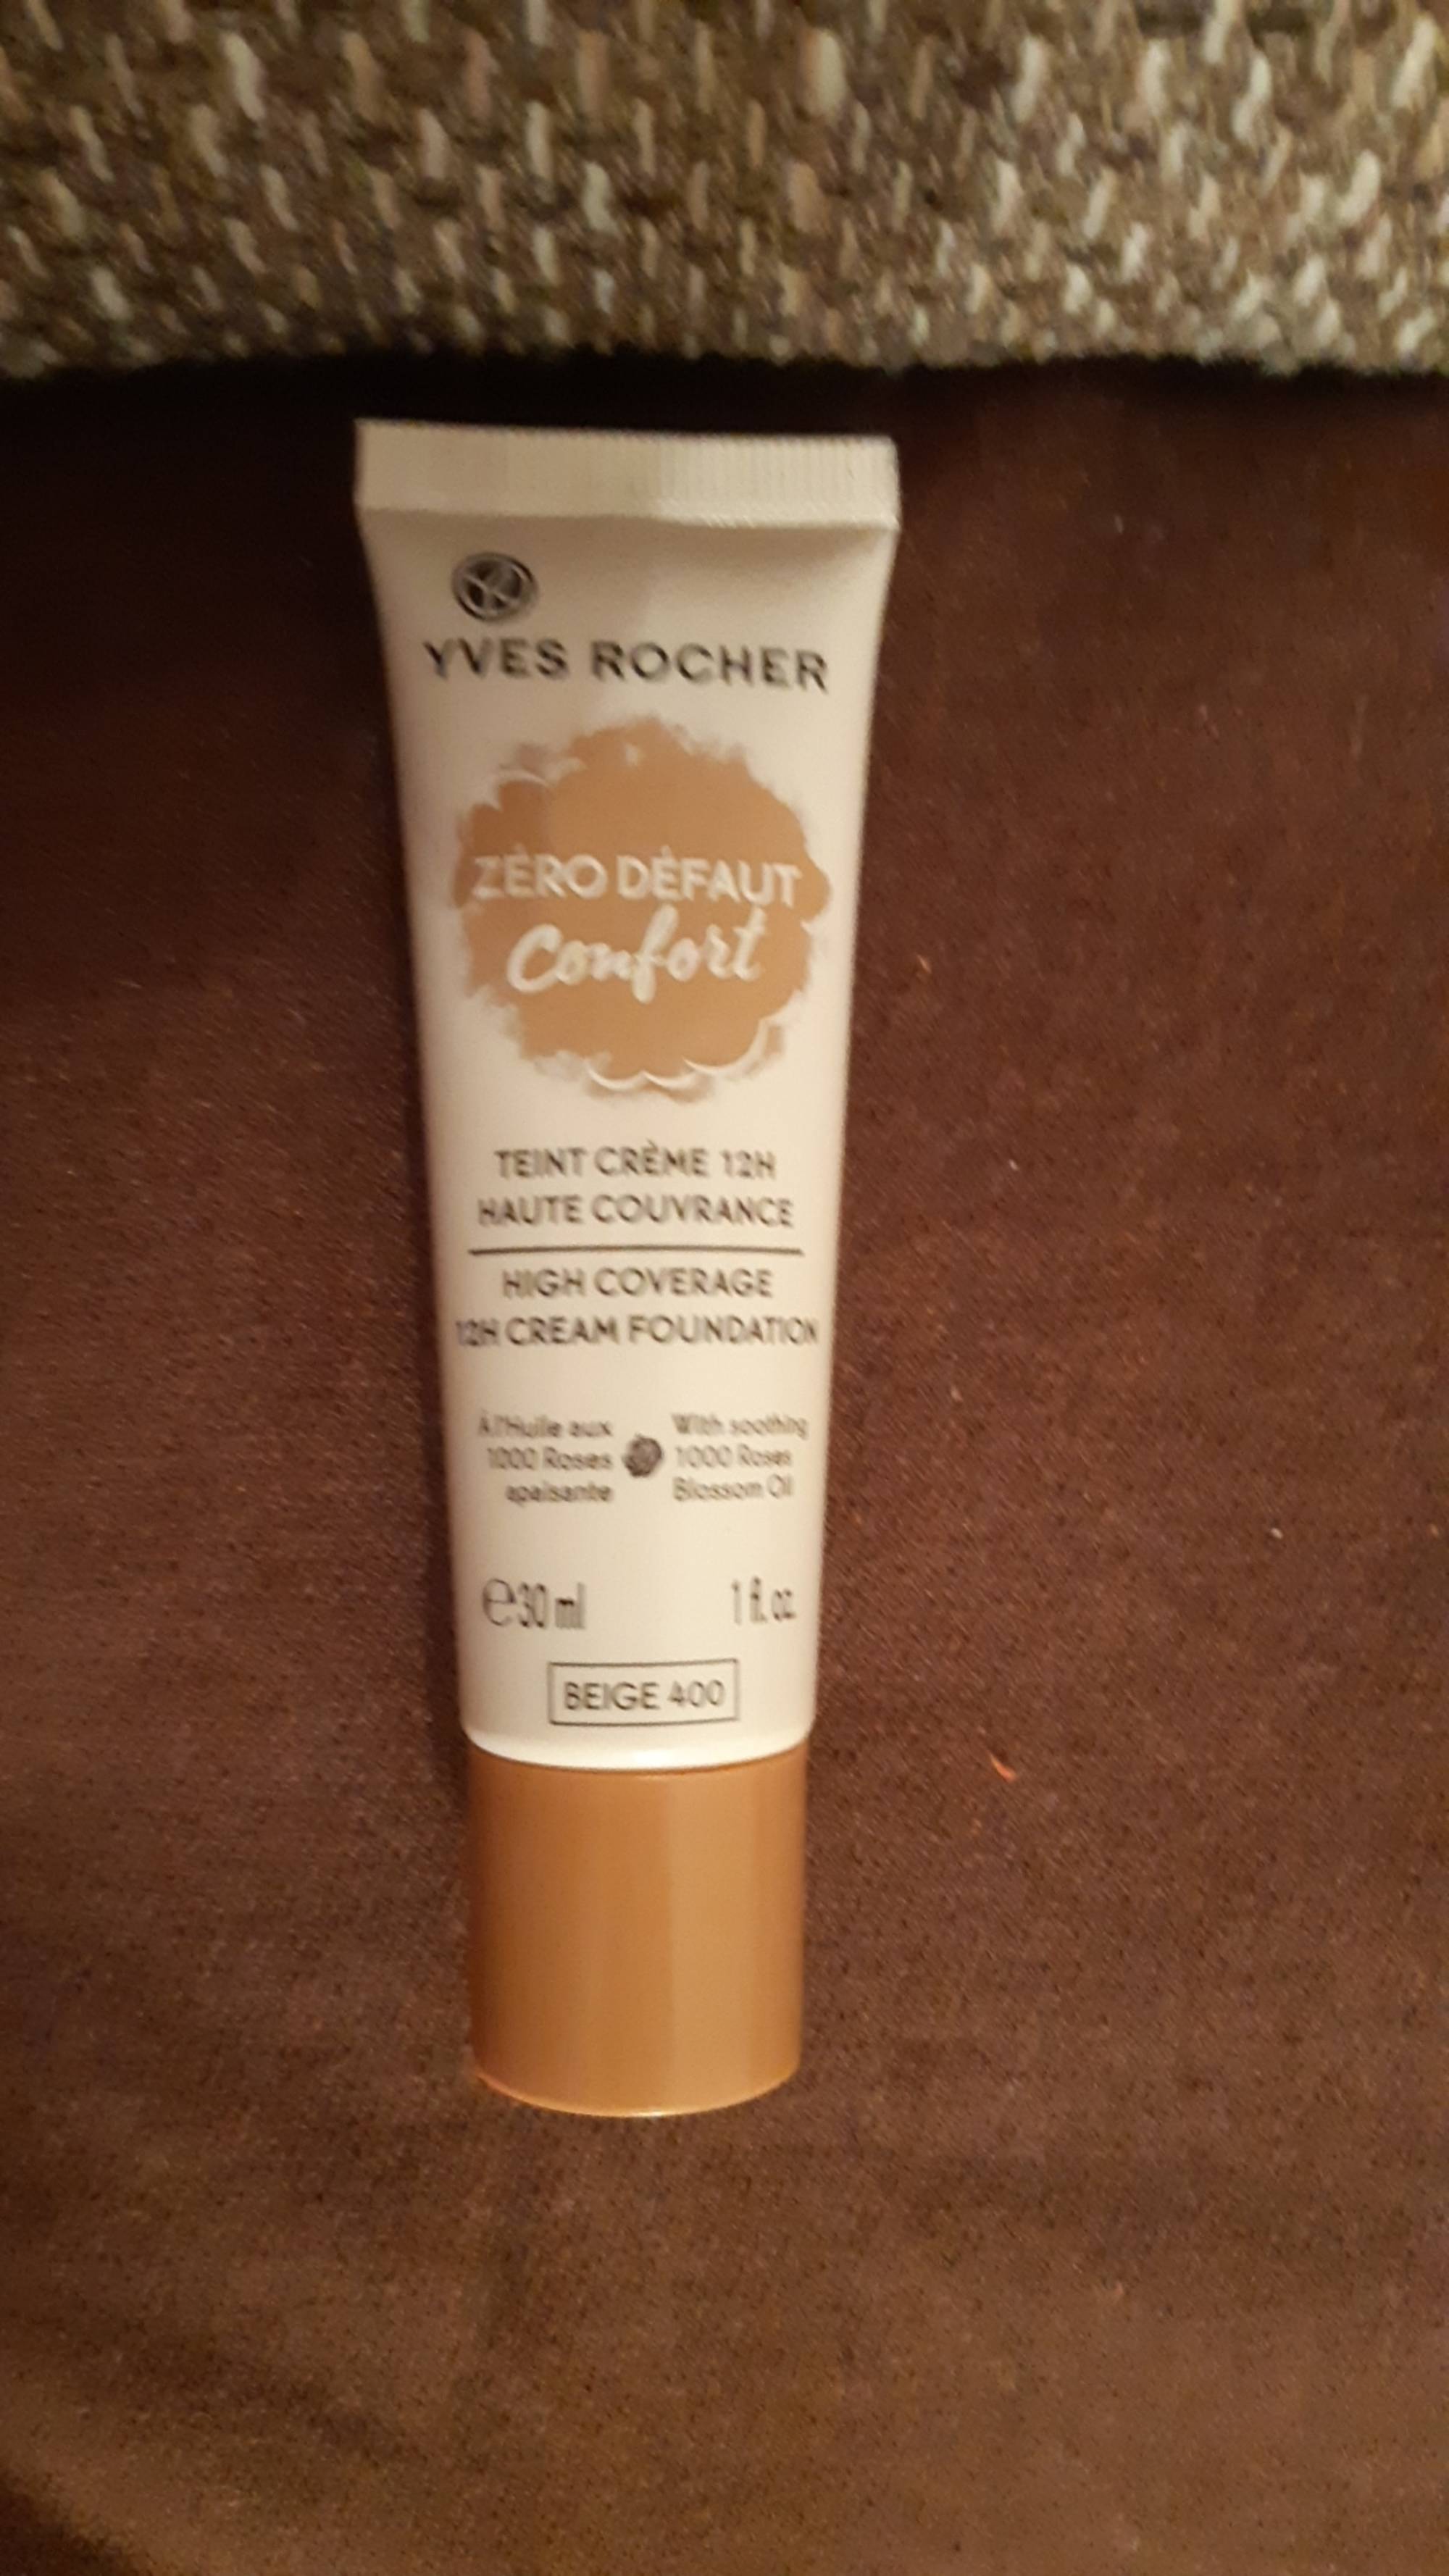 YVES ROCHER - Zéro défaut confort - Teint crème 12h